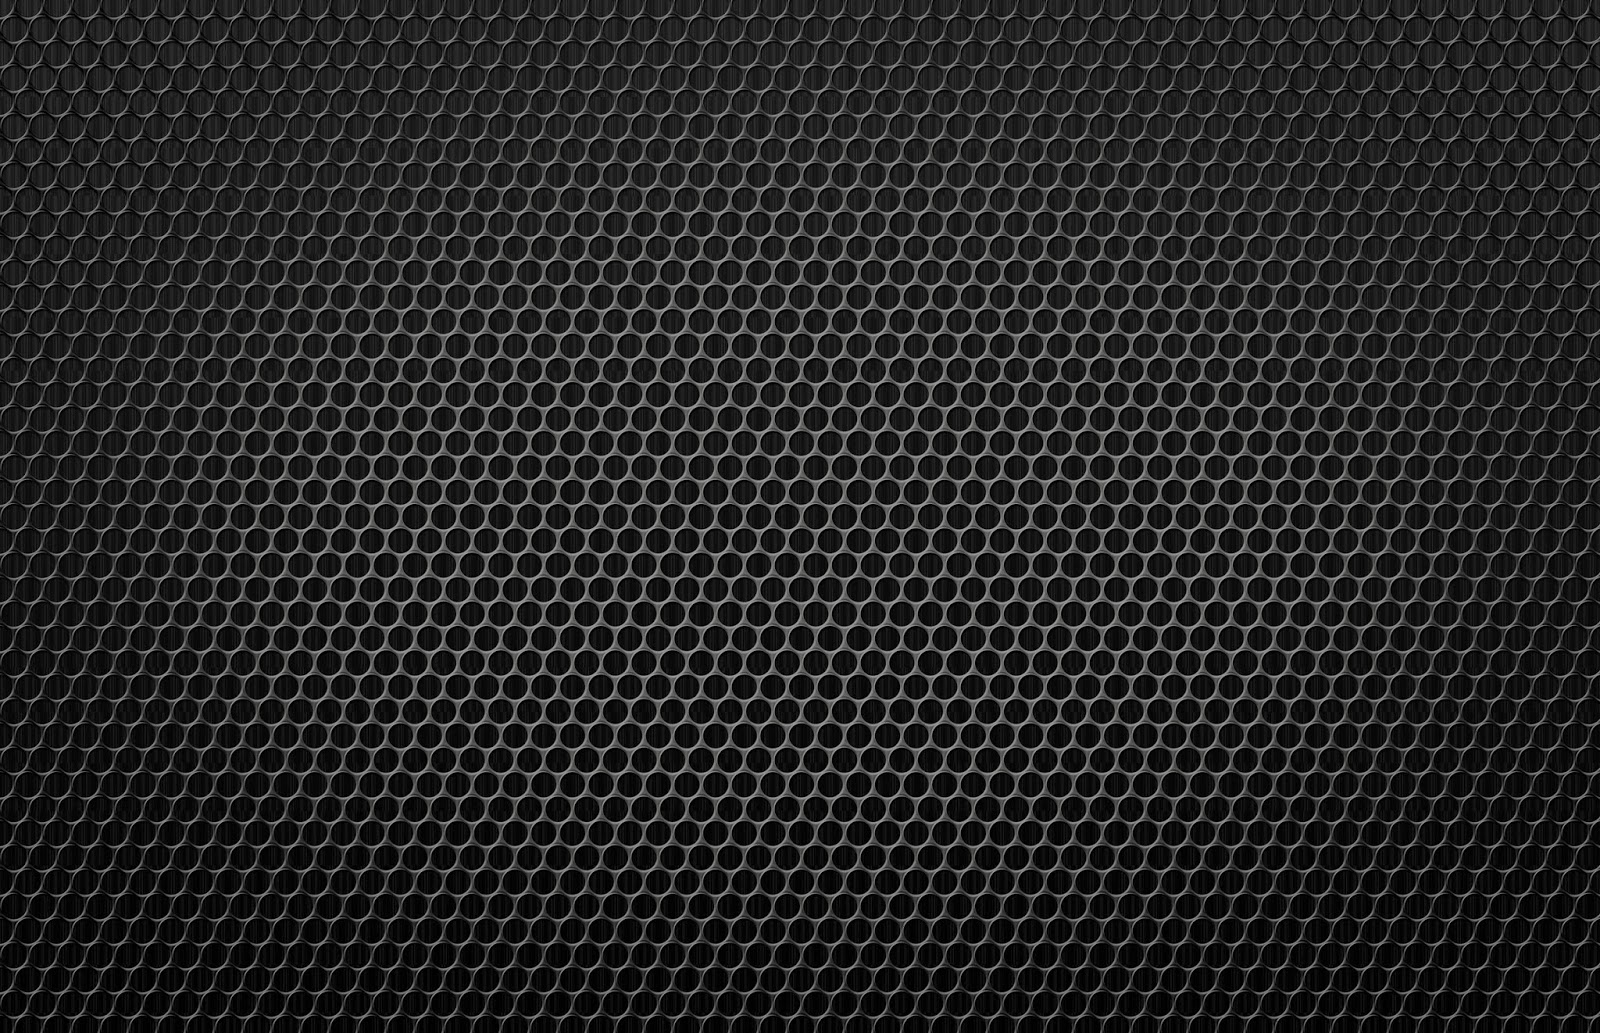 Dark Textured Background Design Patterns Website Image HD Psd